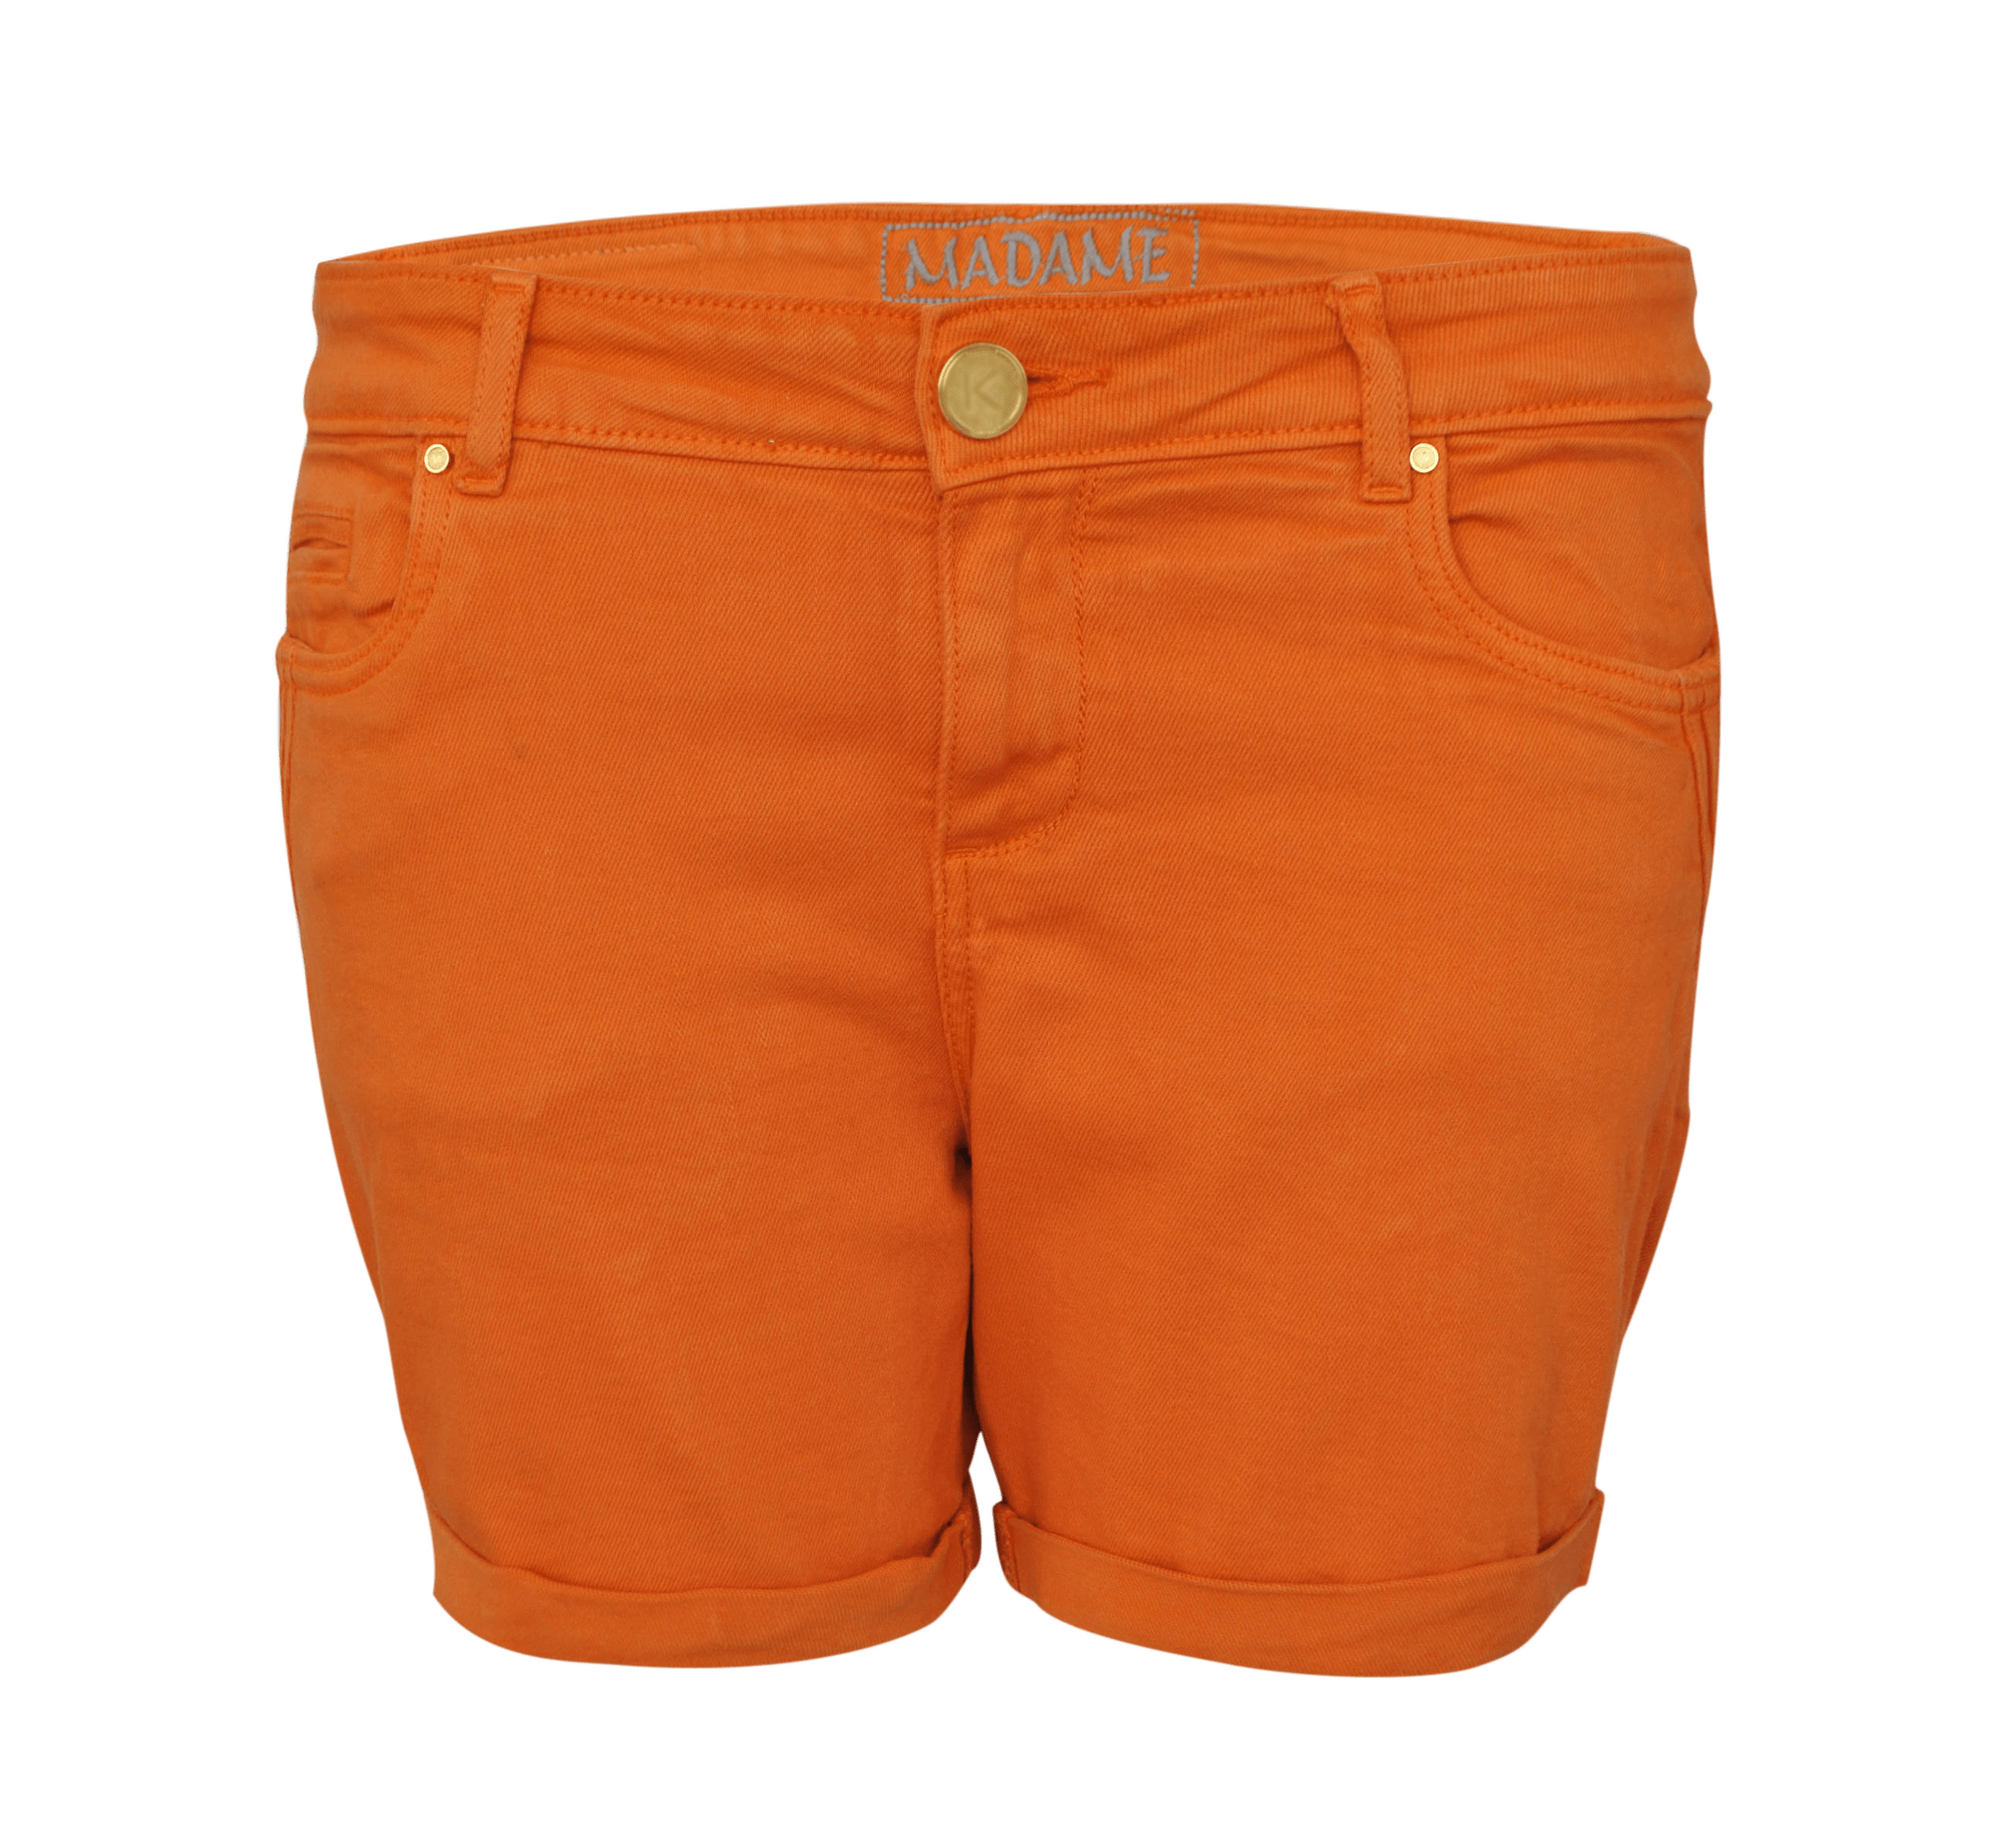 Short Pant Orange png icons